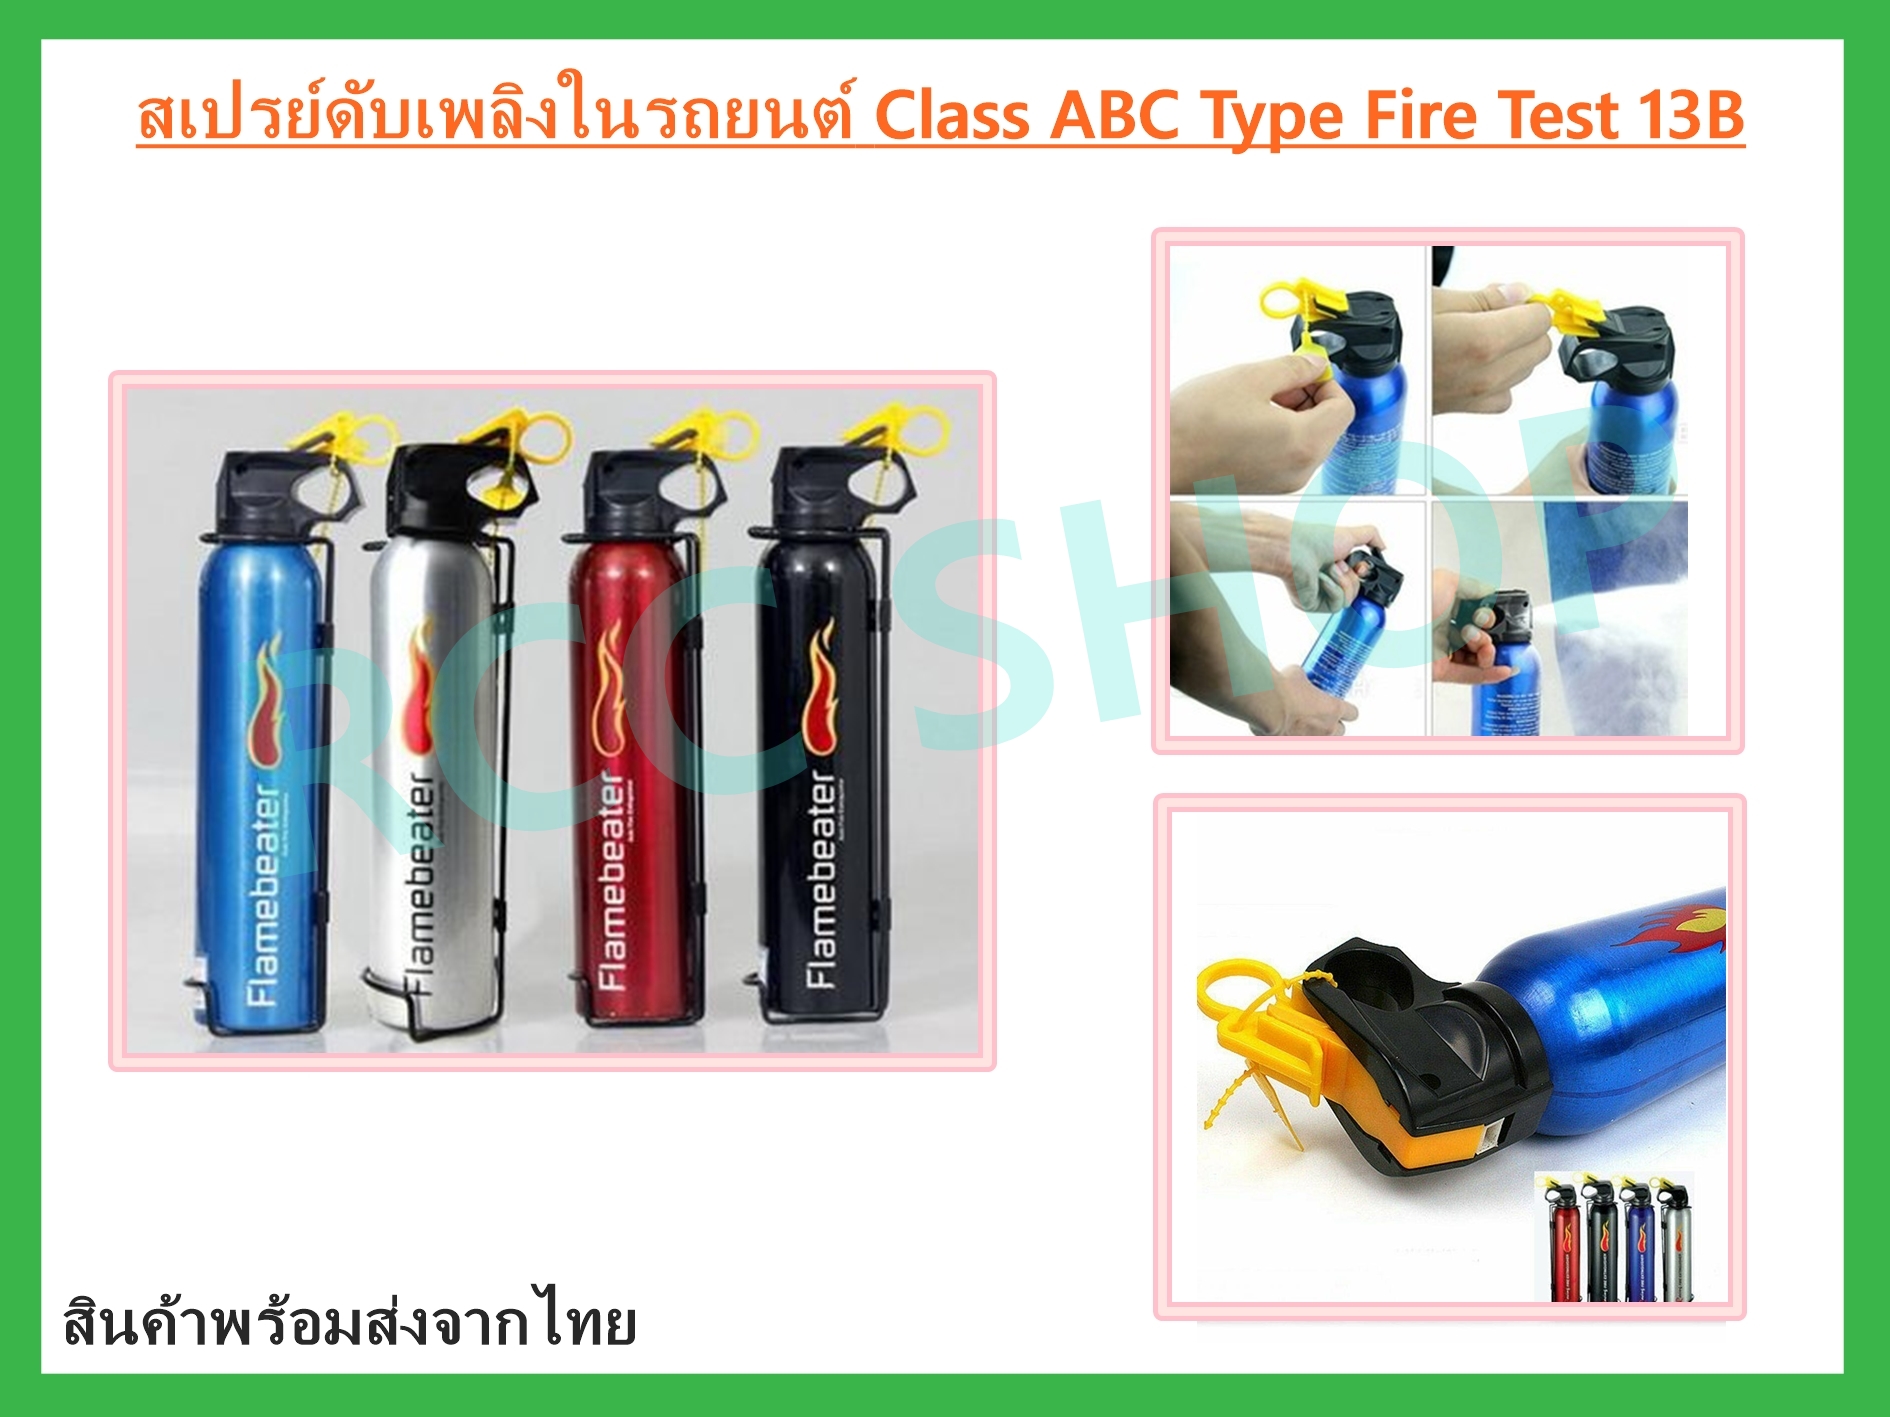 สเปรย์ดับเพลิงในรถยนต์ Class ABC Type Fire Test 13B สี Blue